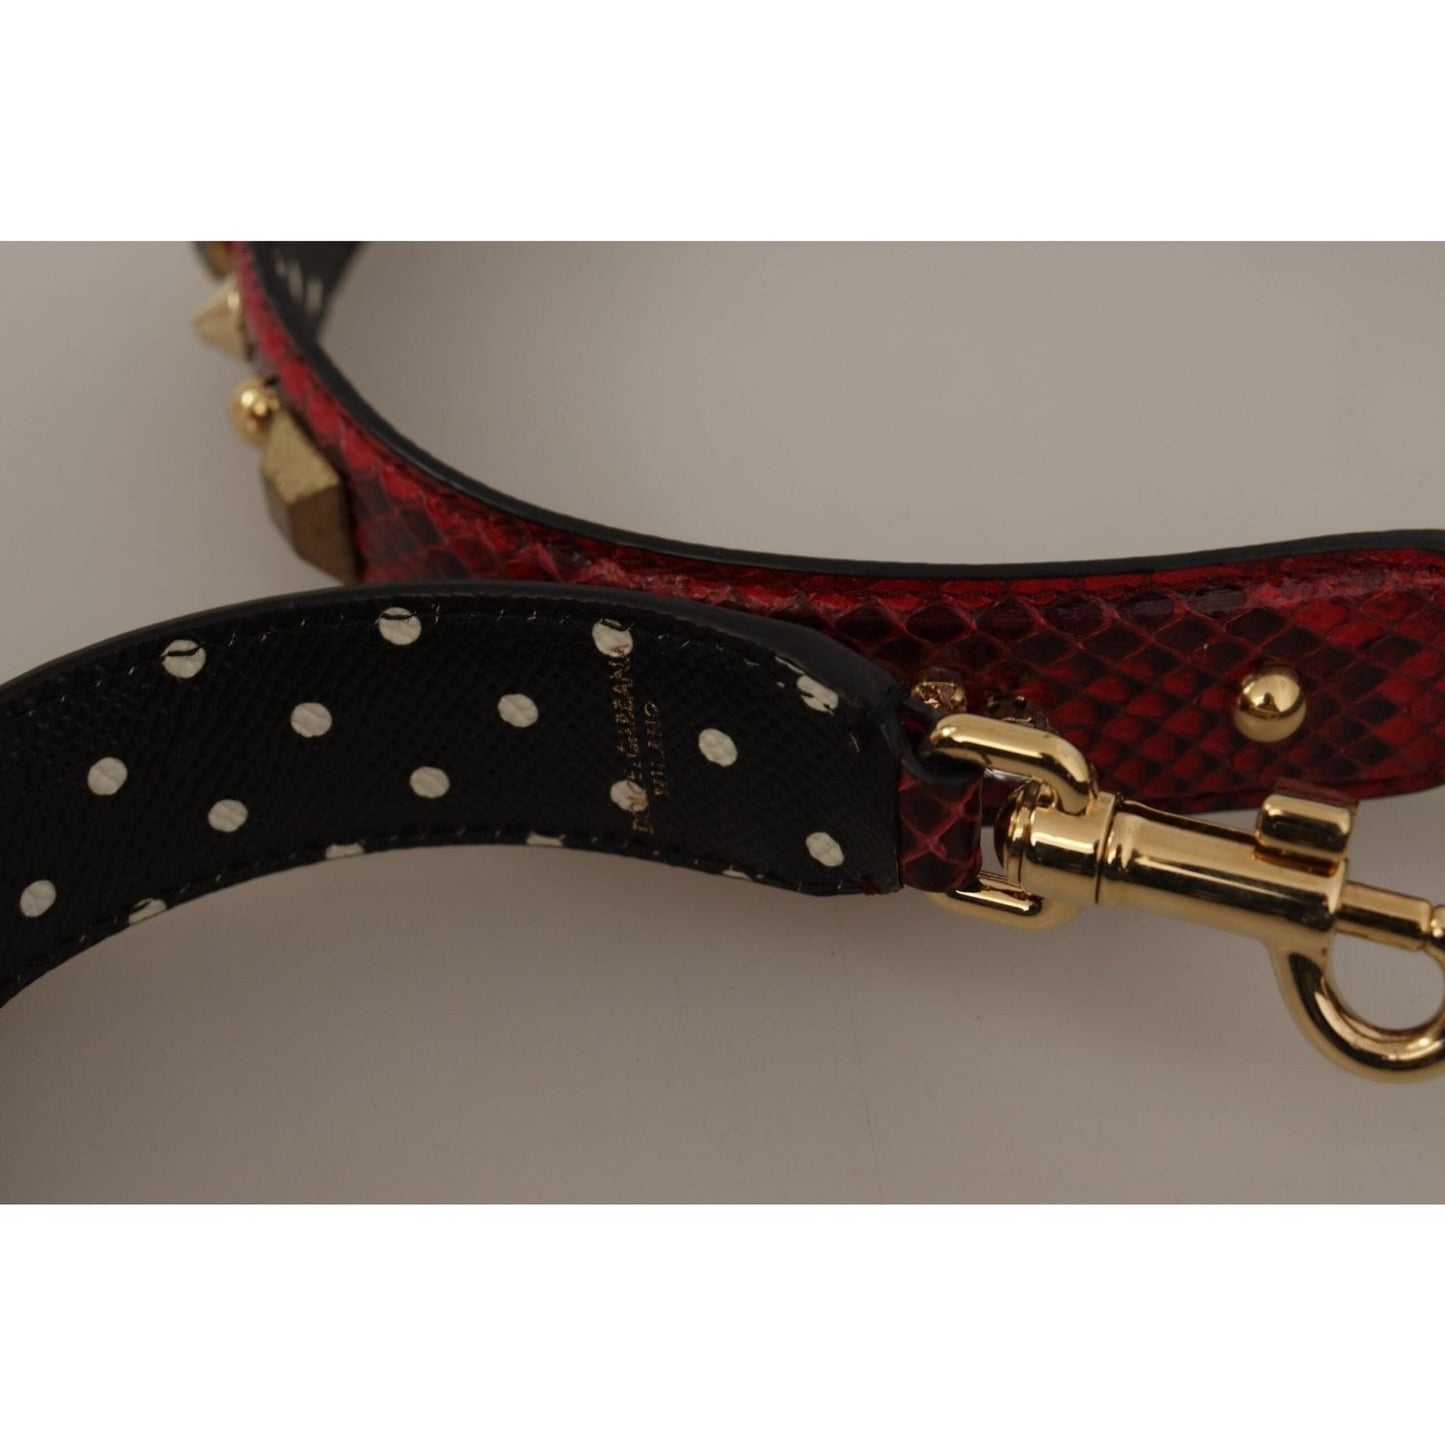 Dolce & Gabbana Red Python Leather Shoulder Bag Strap red-python-leather-crystals-reversible-shoulder-strap IMG_9898-1-scaled-0505c495-d00.jpg